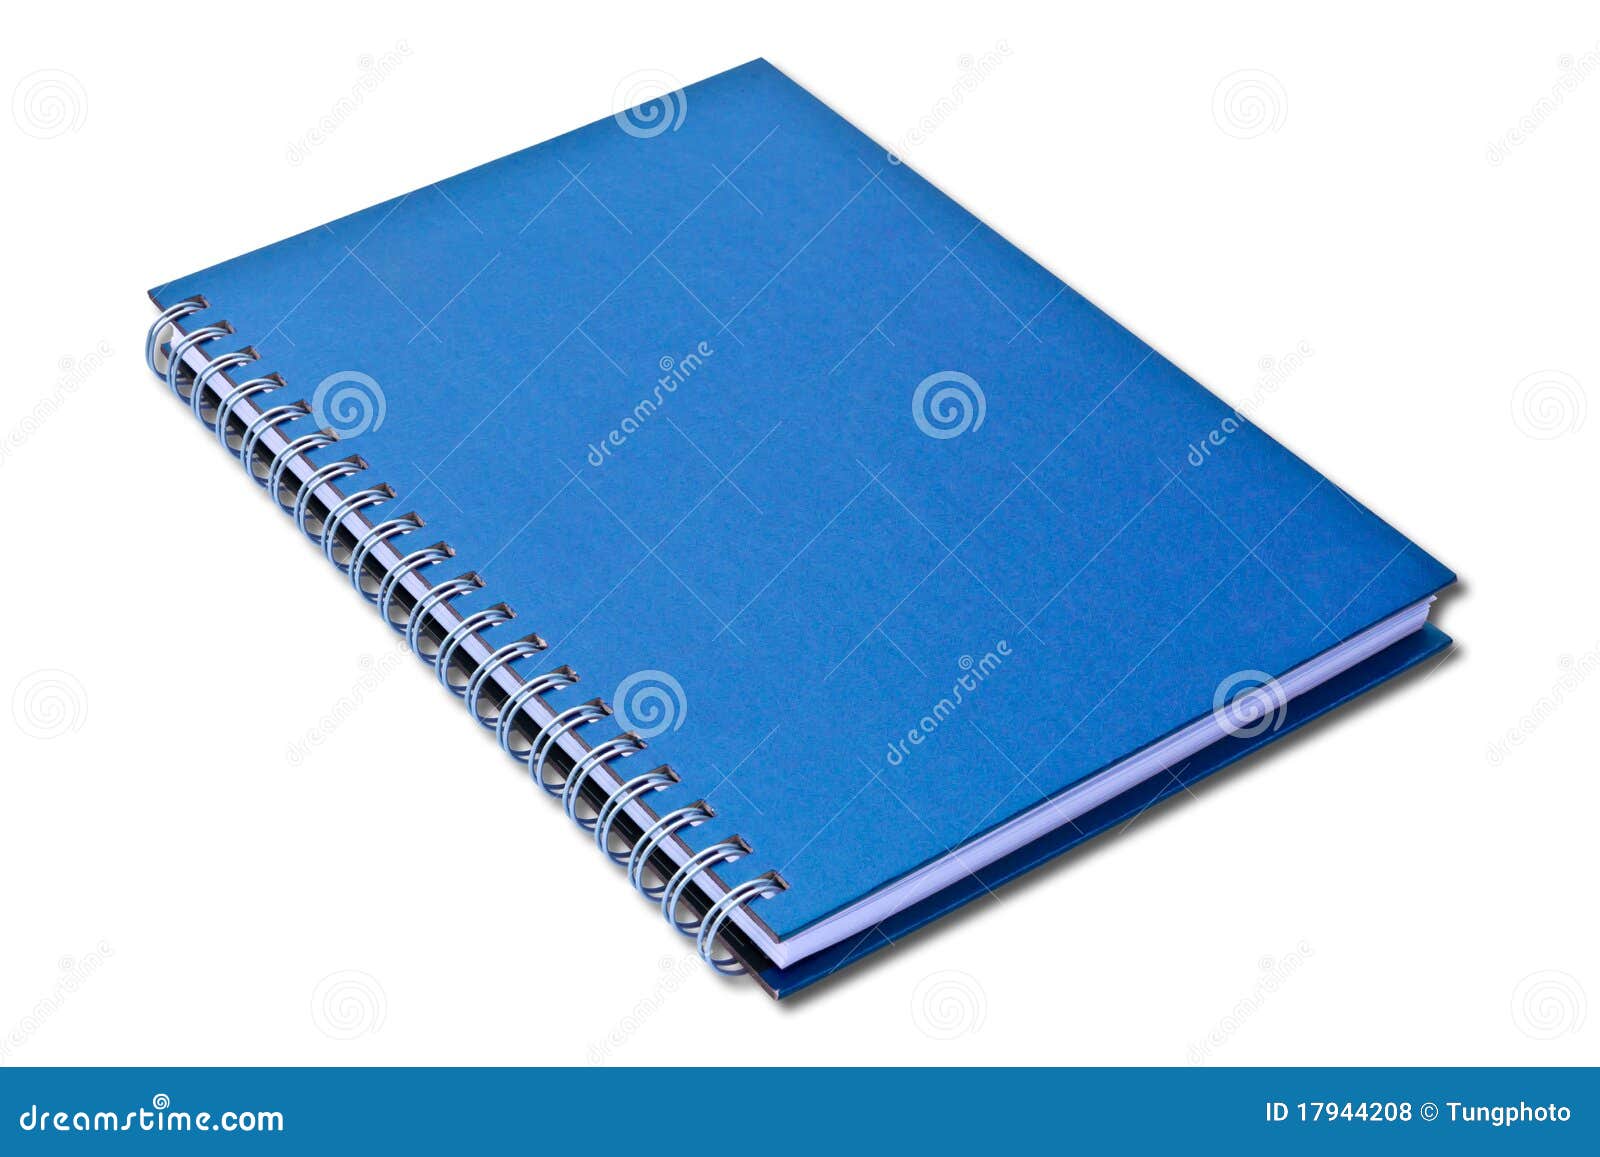 blue notebook 